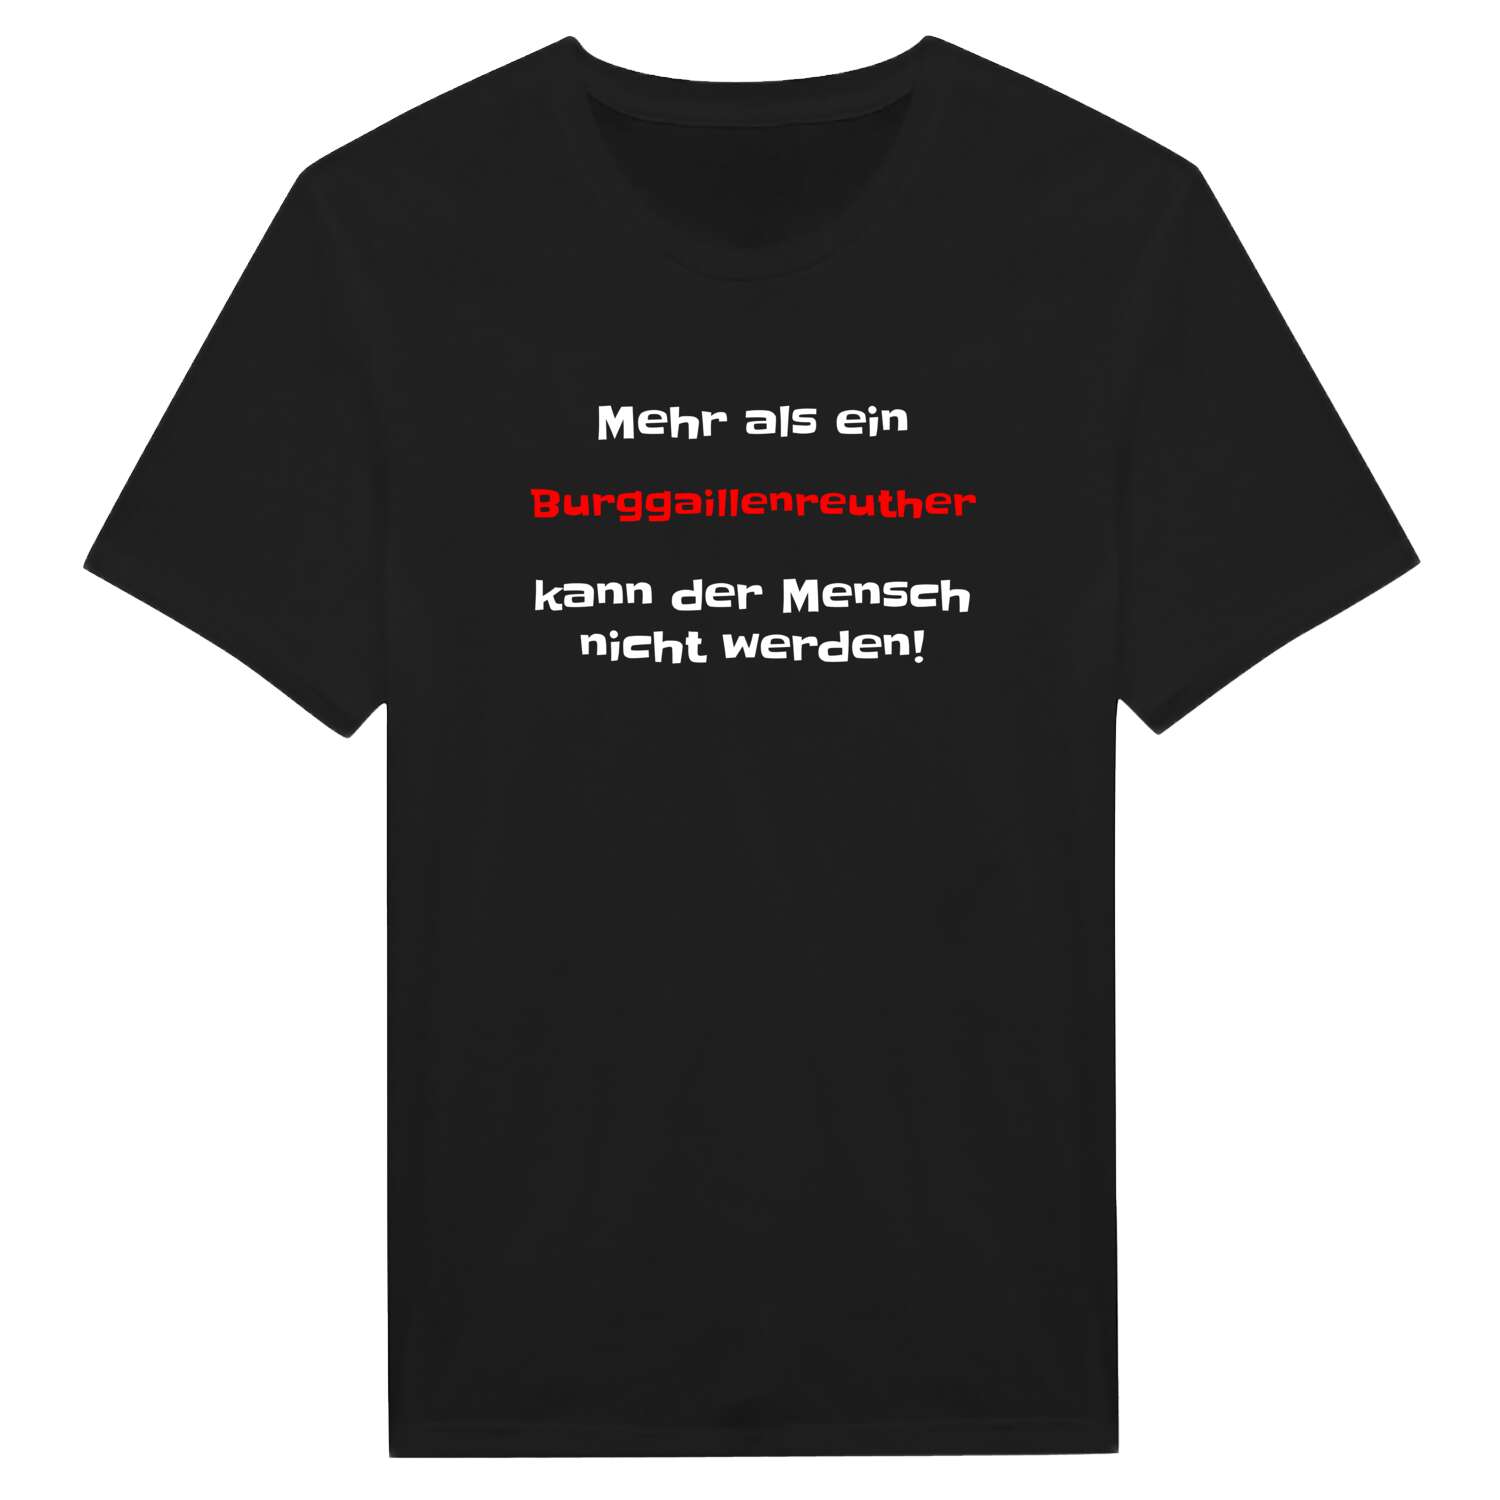 Burggaillenreuth T-Shirt »Mehr als ein«